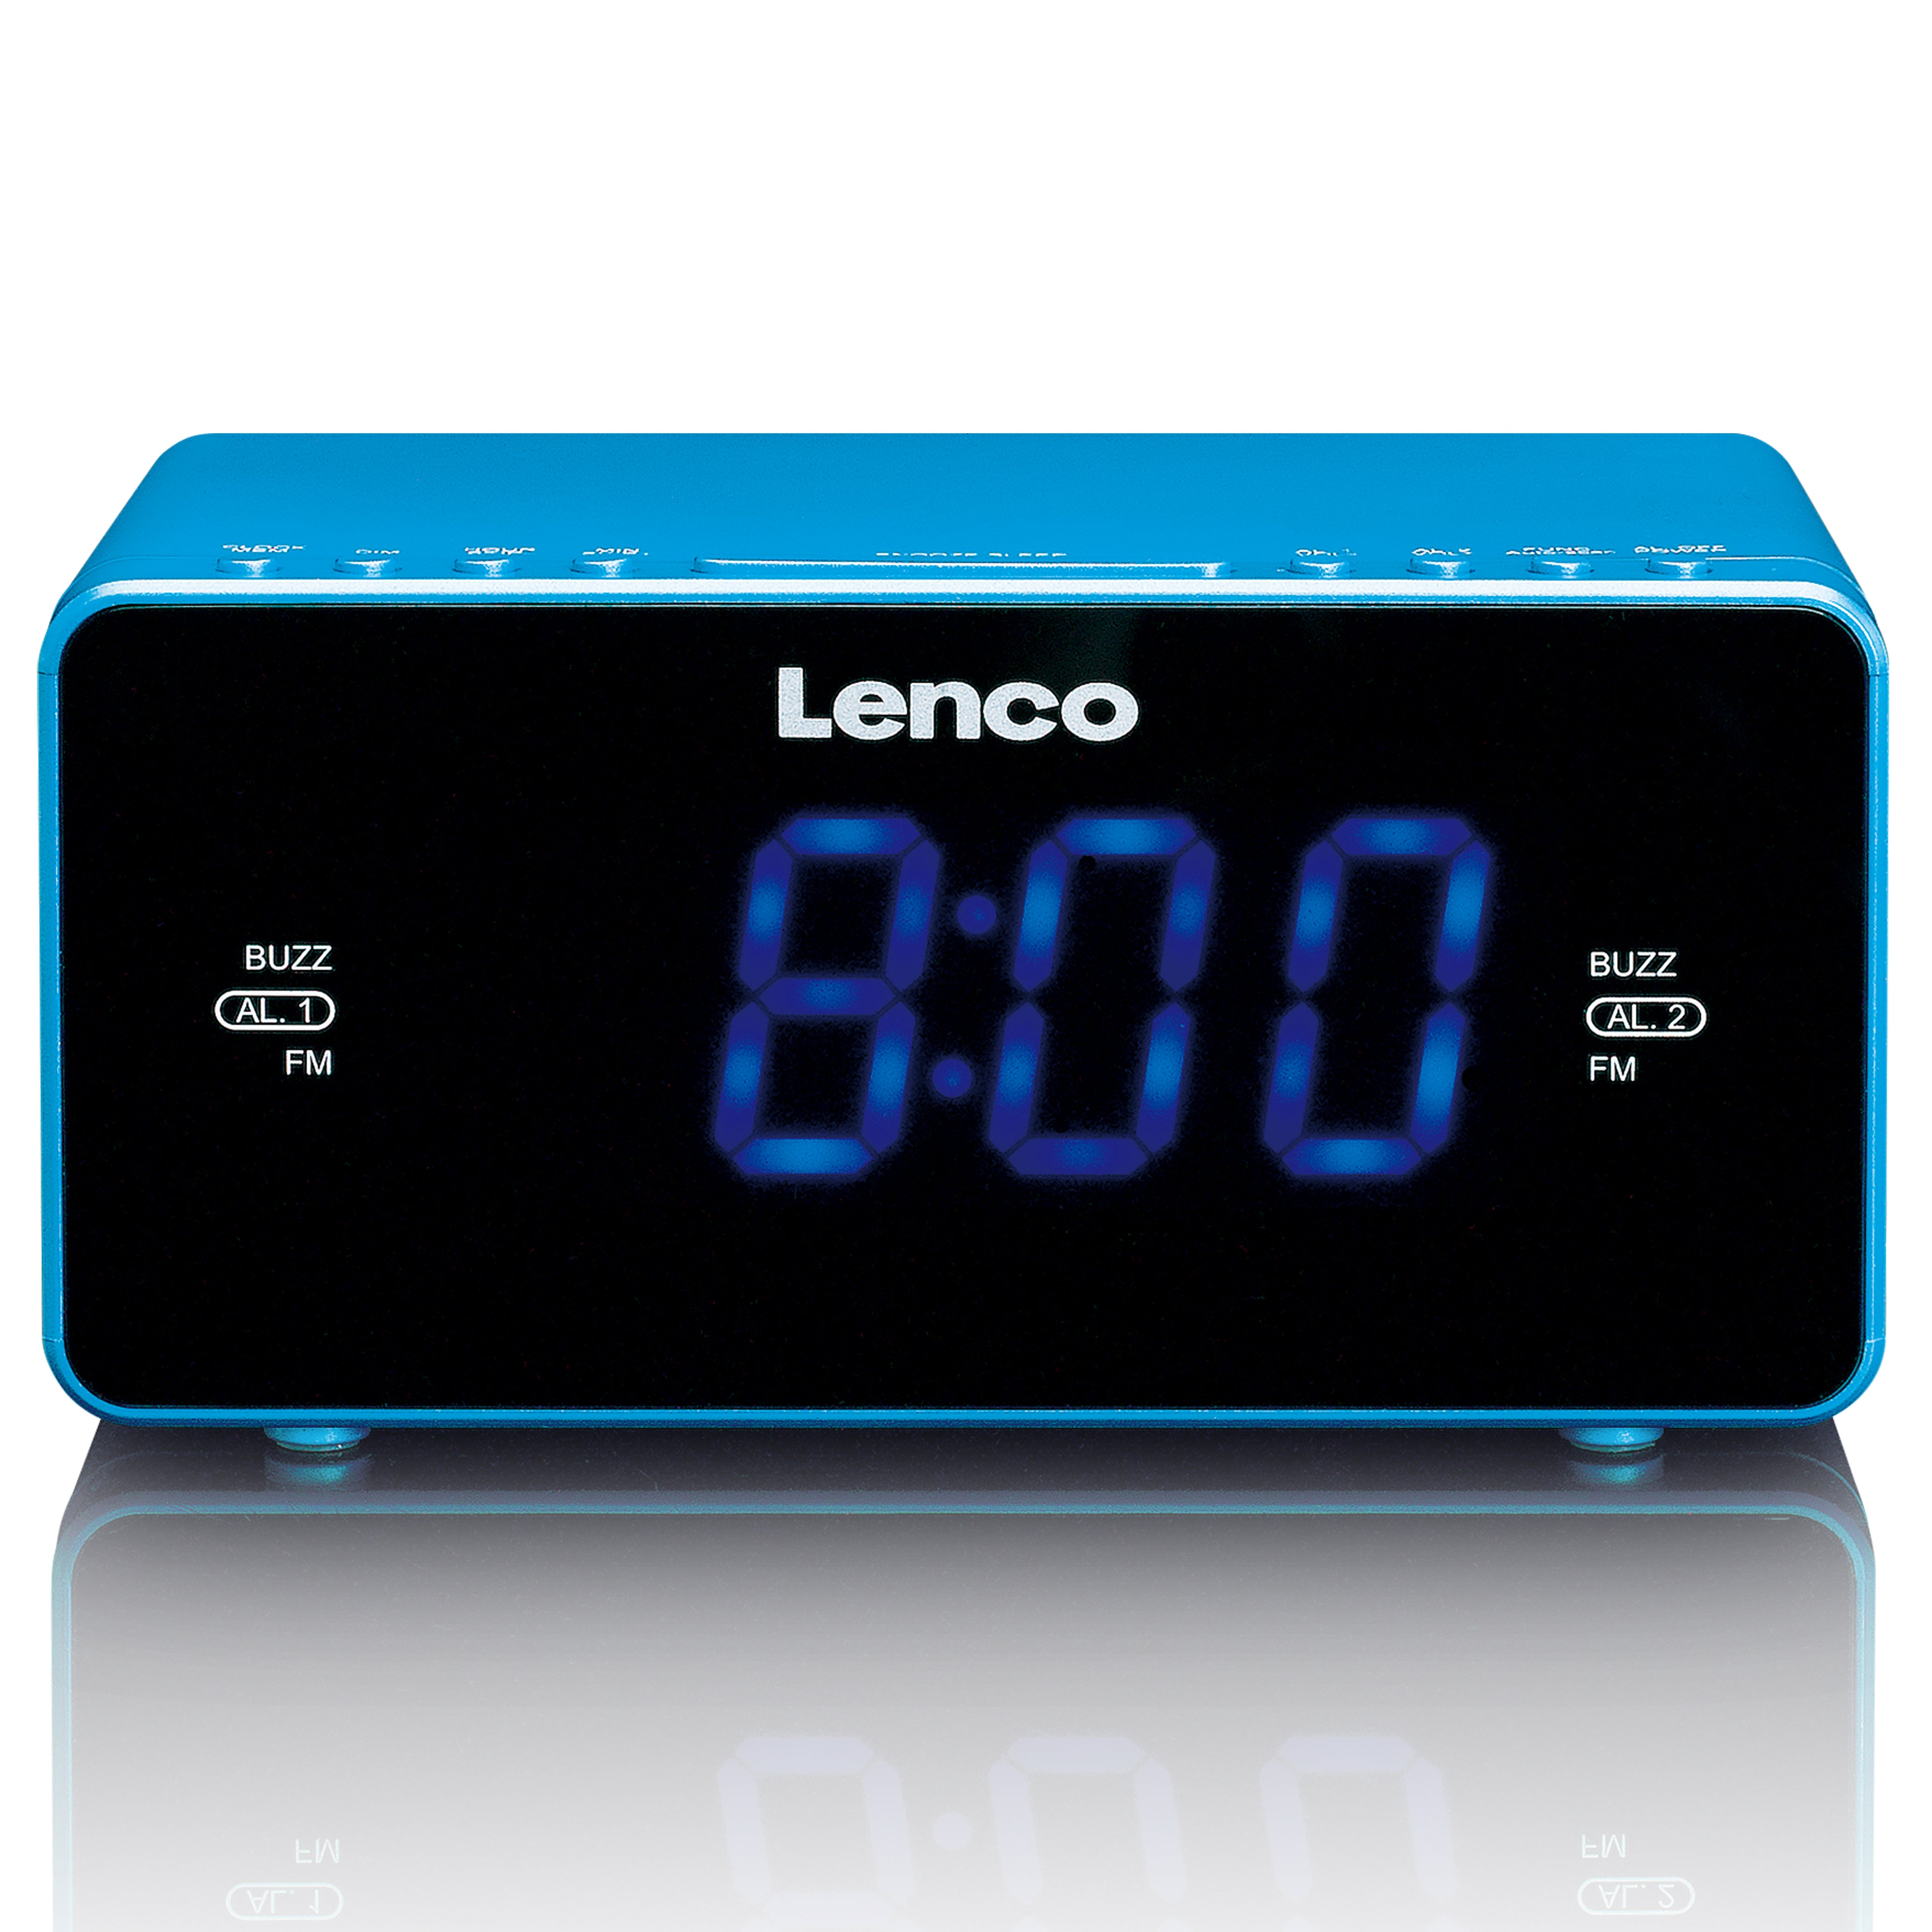 LENCO CR-520BU - Stereo FM clock radio with USB port - Blue – Lenco-Catalog